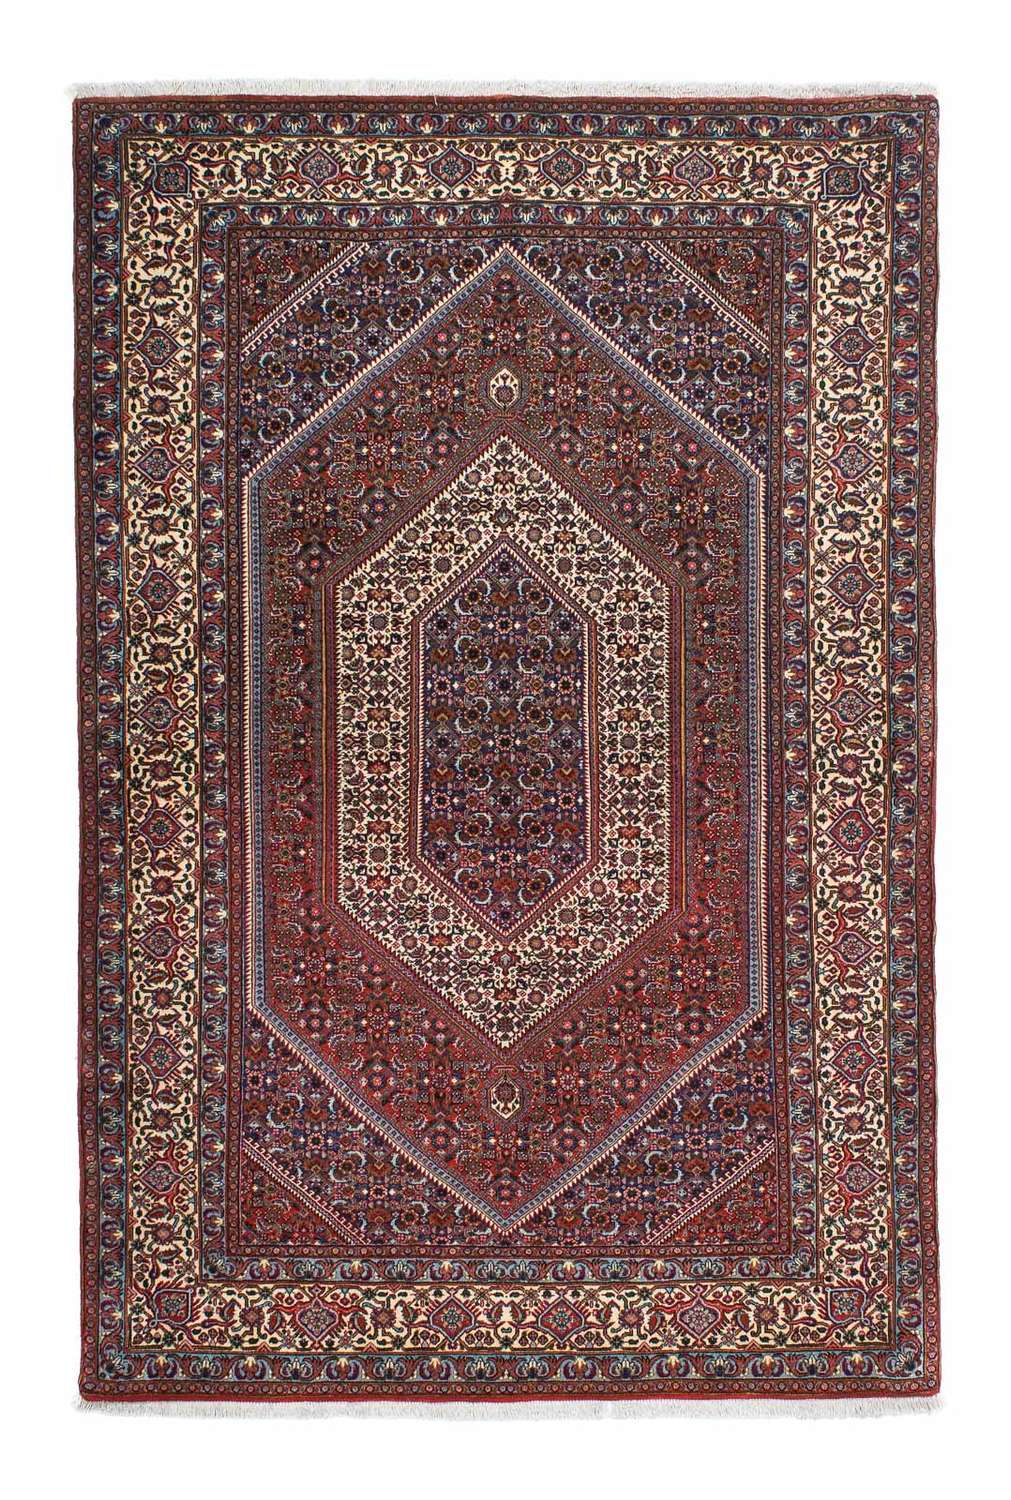 Alfombra persa - Bidjar - 197 x 133 cm - multicolor